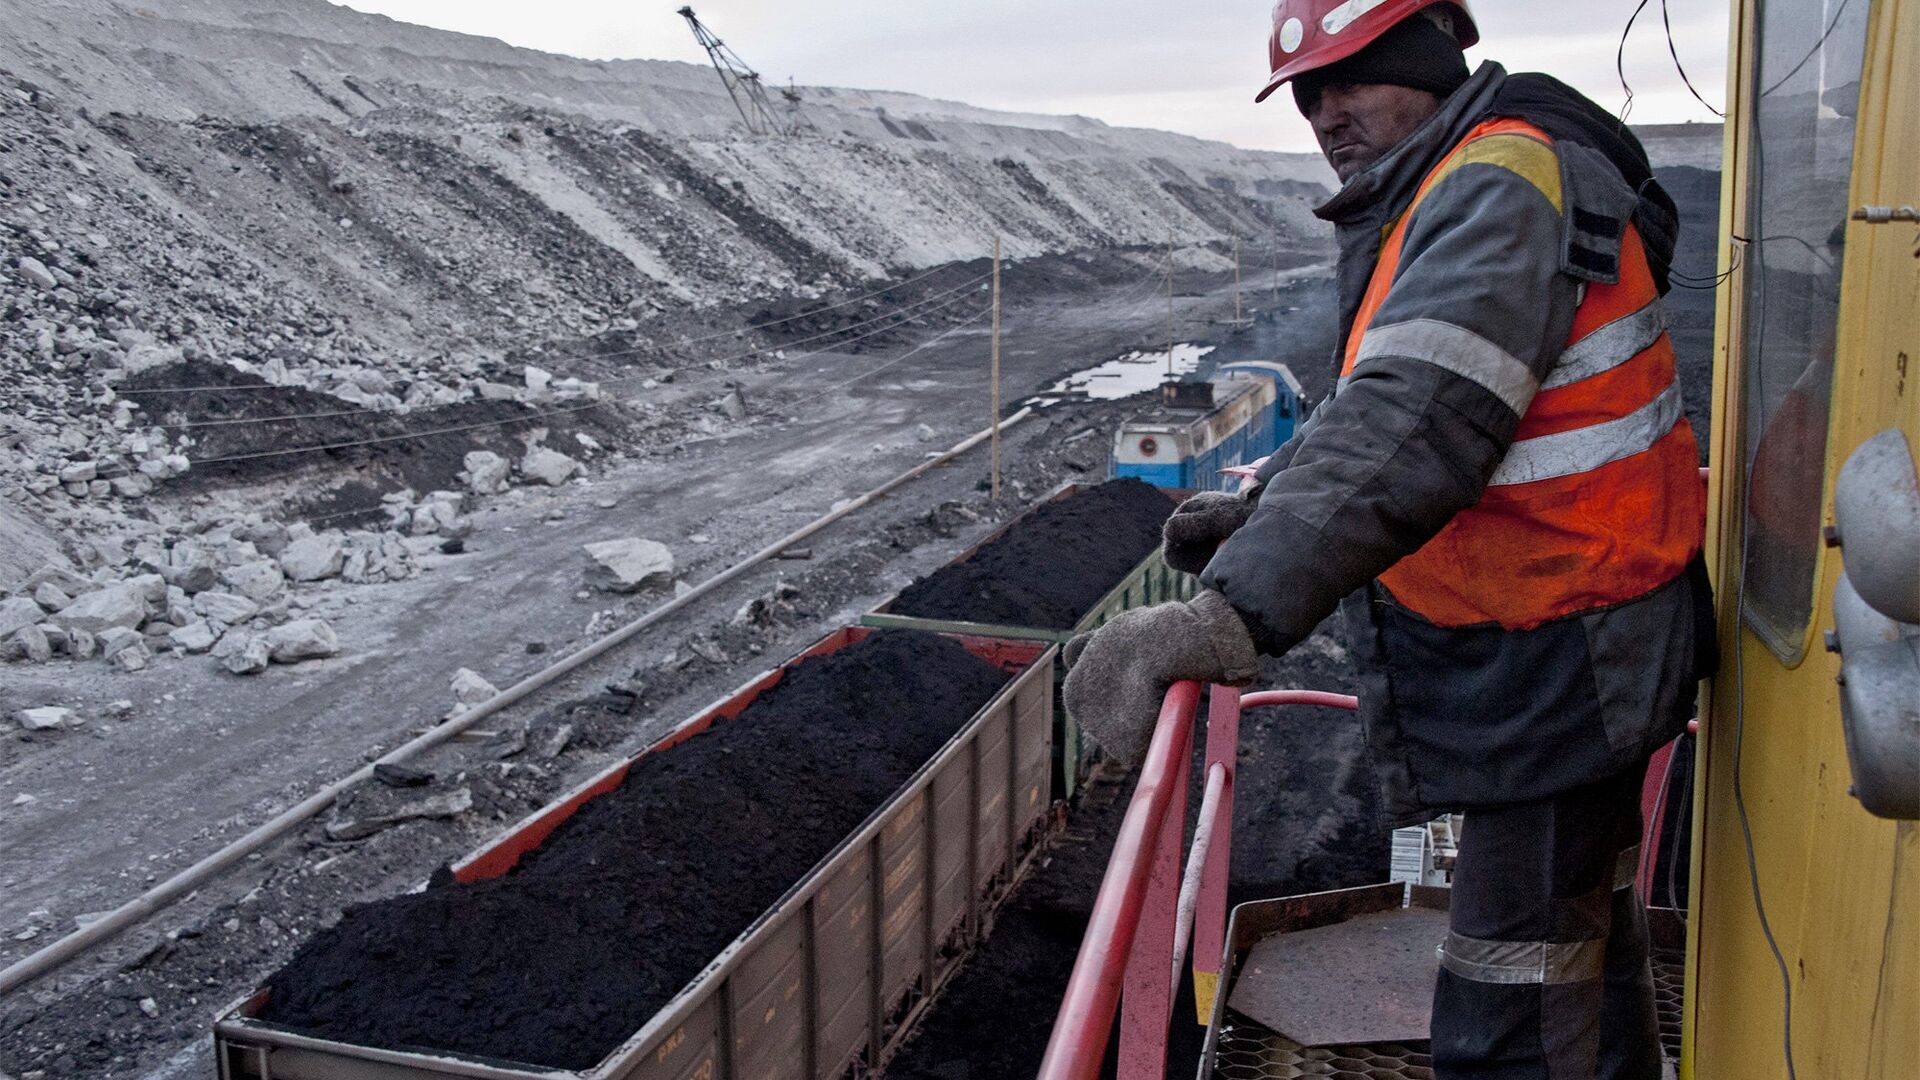 Європа в умовах енергетичної кризи змушена повернутися до вугілля